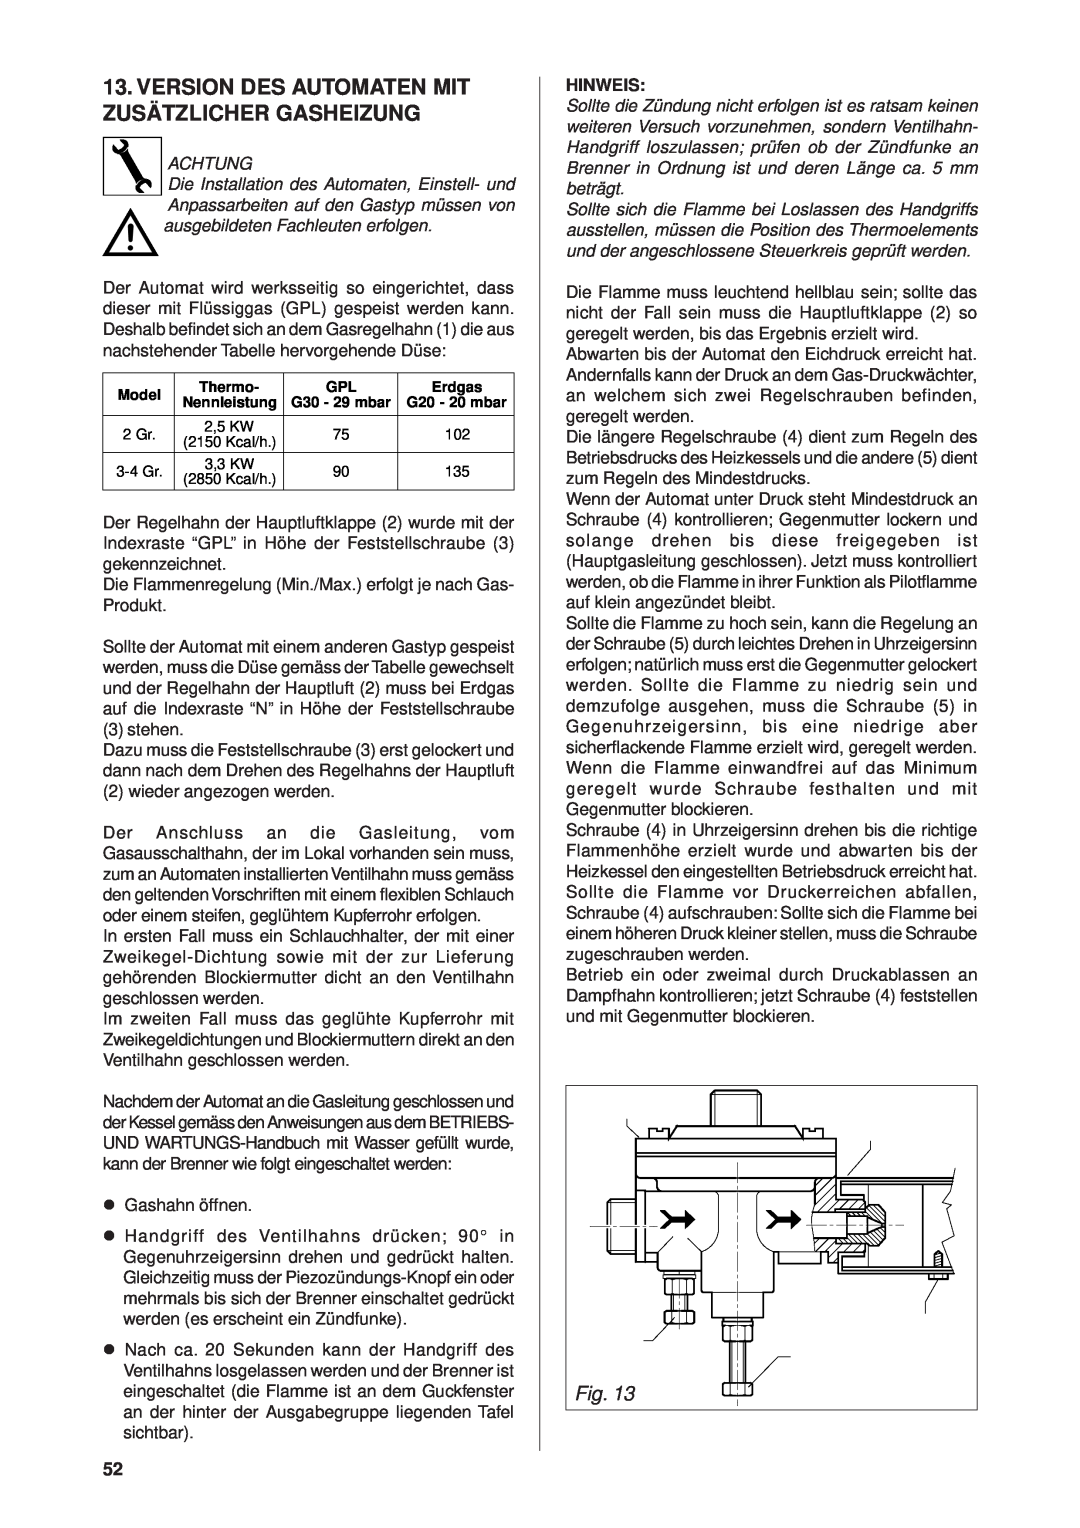 Rancilio Millennium manual Version Des Automaten Mit Zusätzlicher Gasheizung, Hinweis 